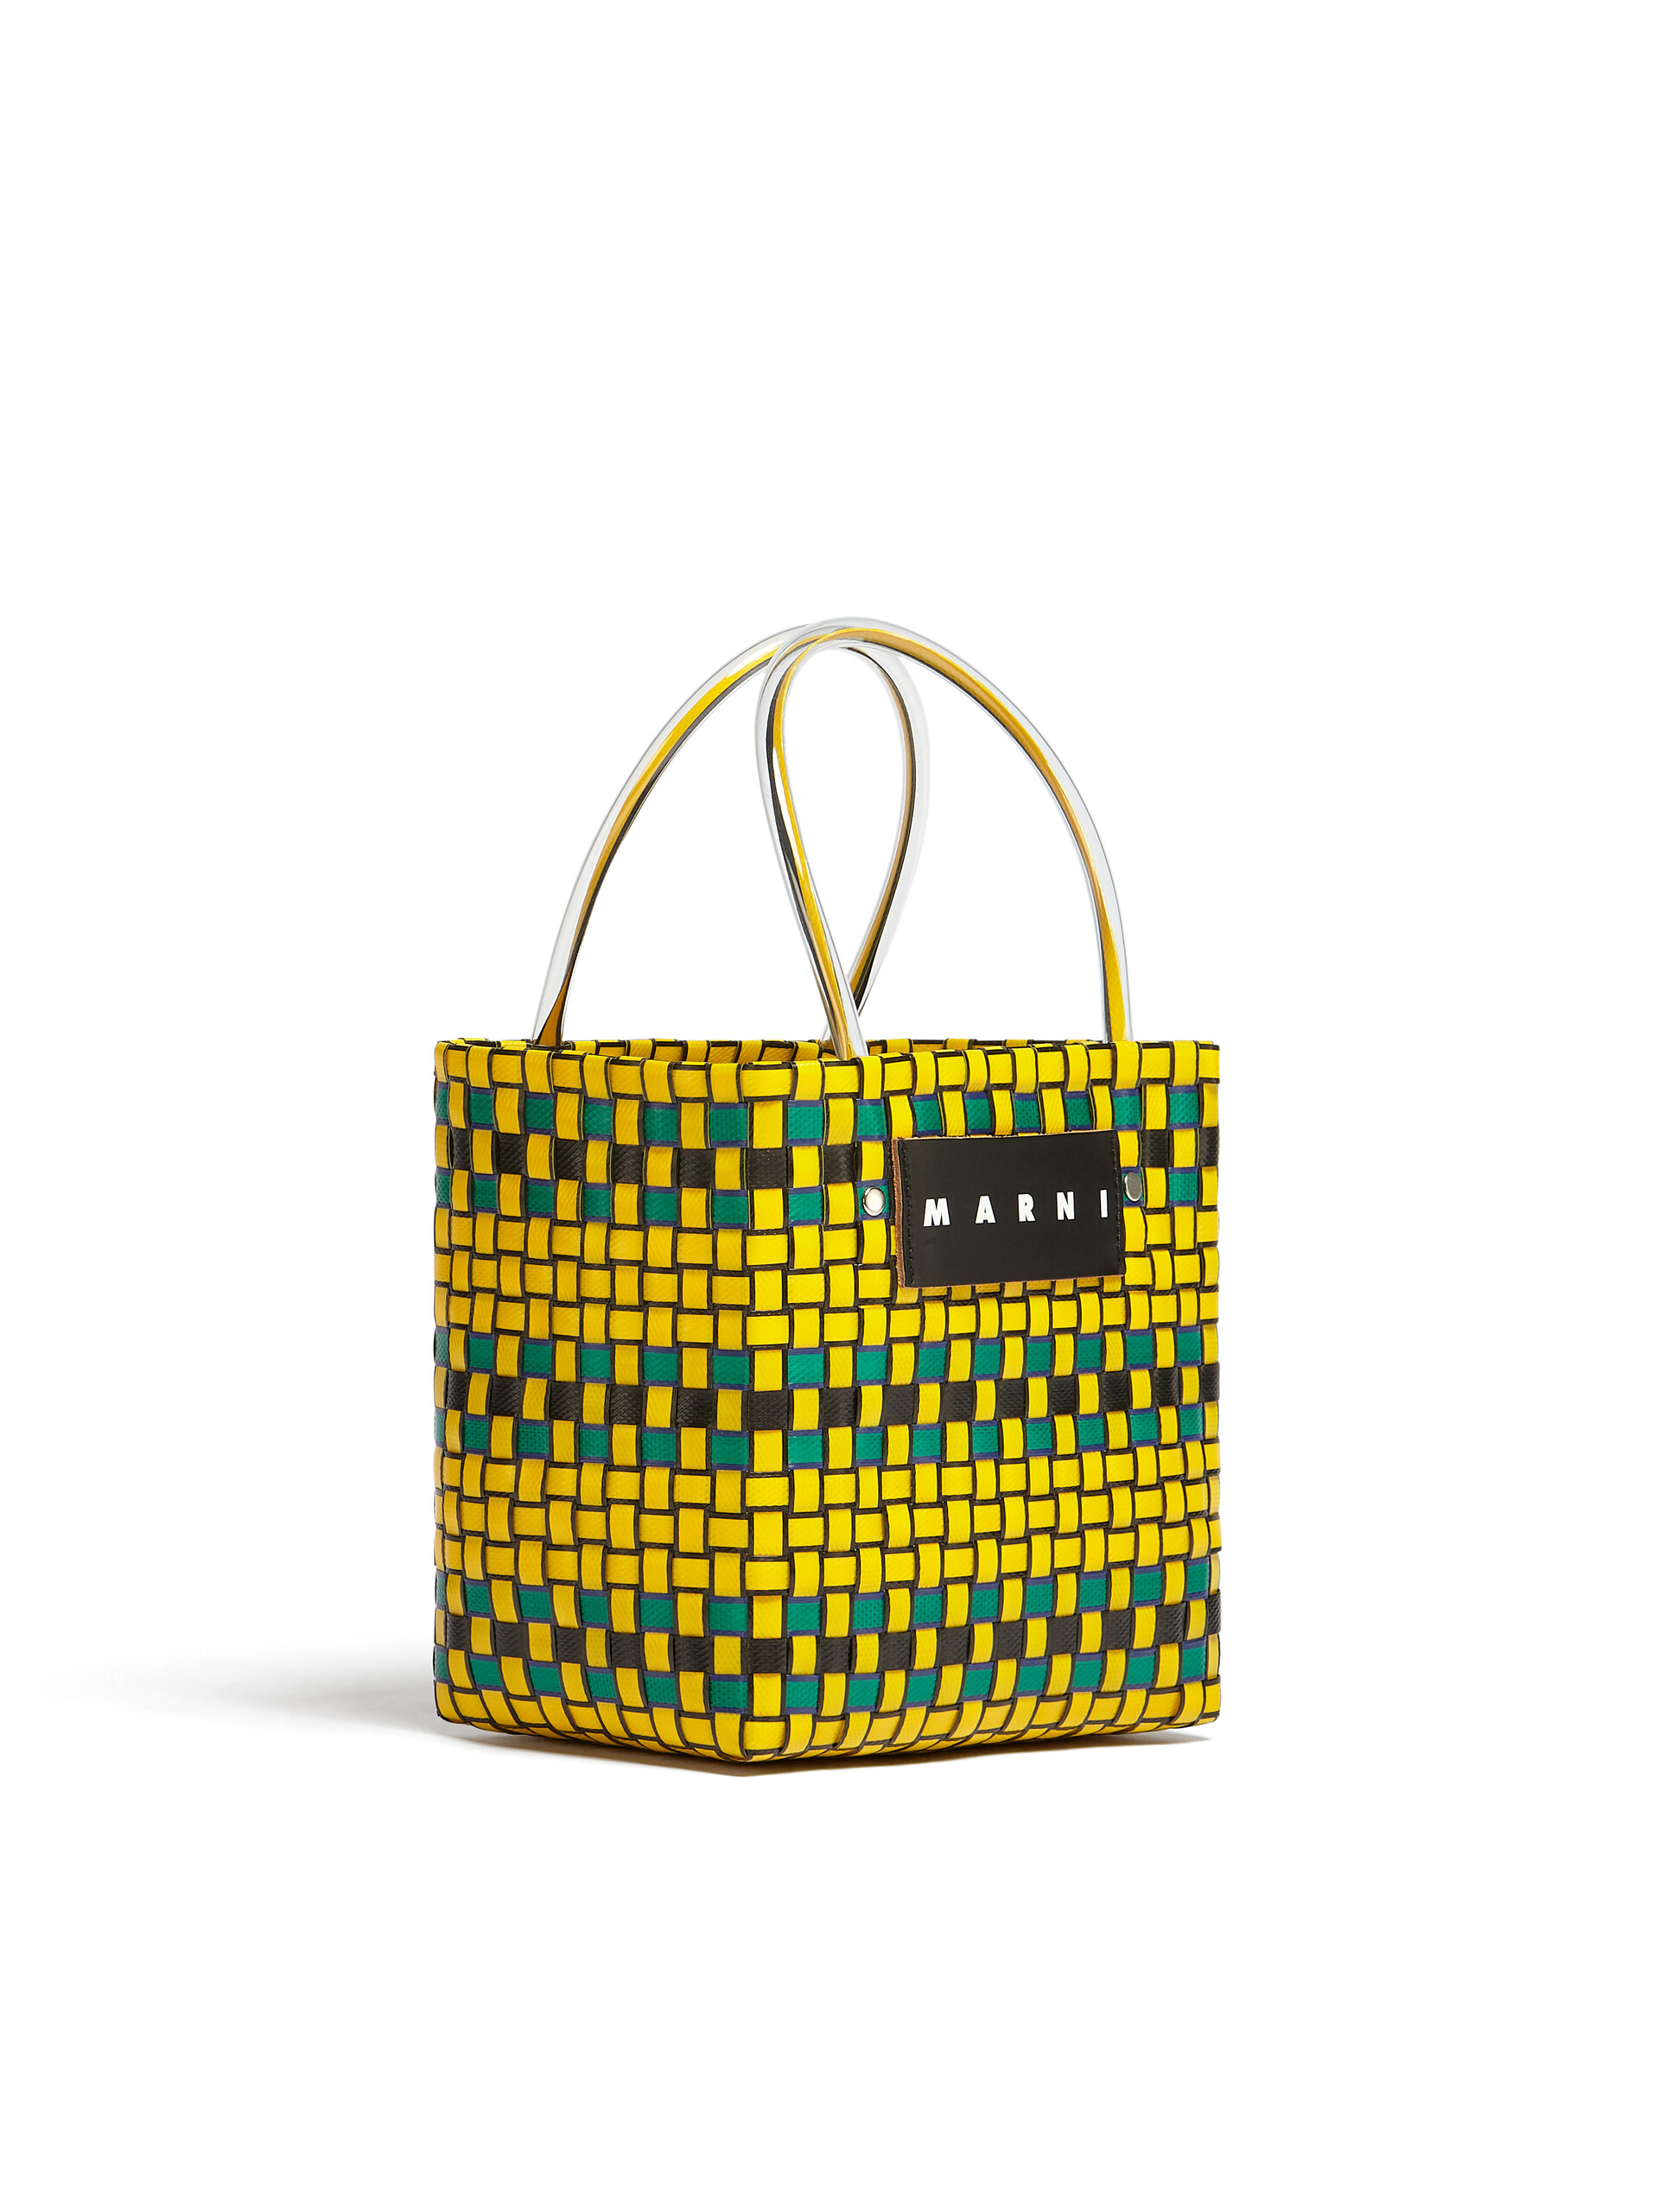 MARNI MARKET shopping bag in yellow polypropylene - Bags - Image 2